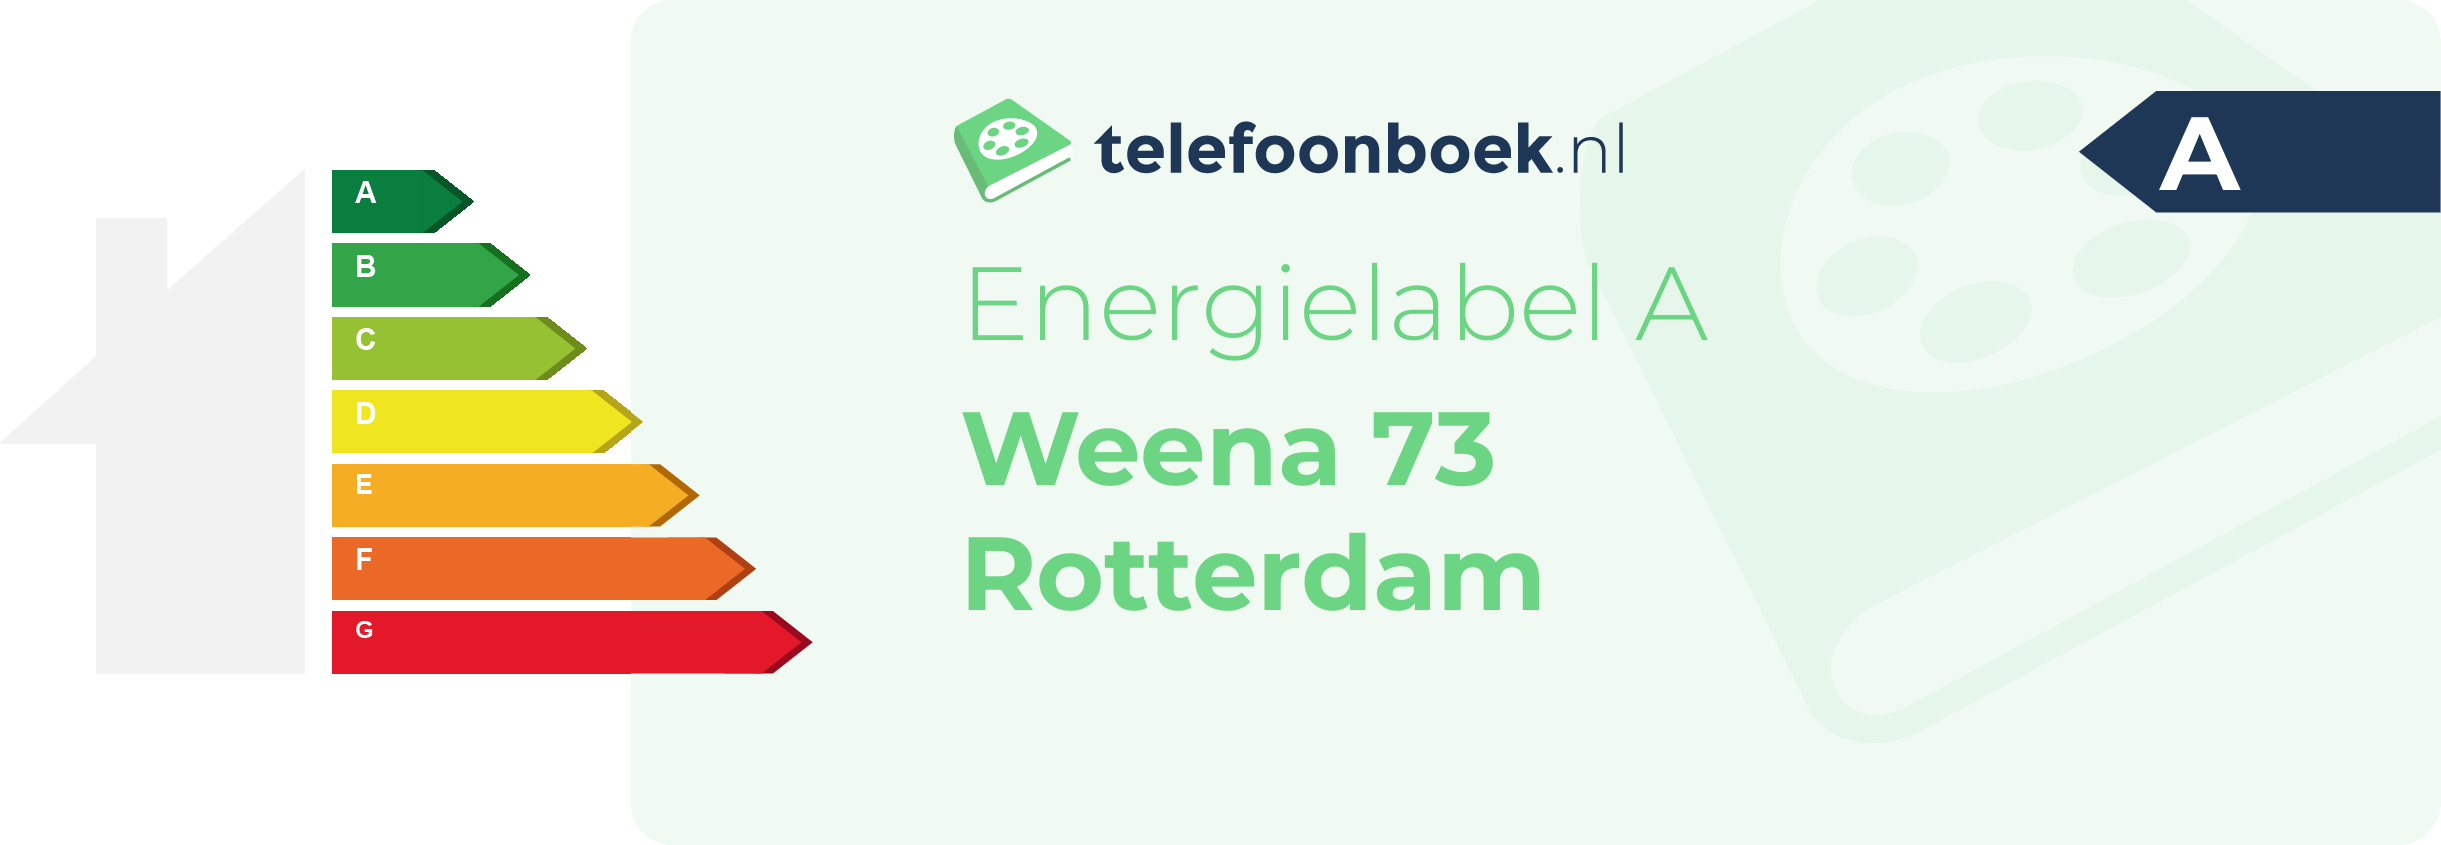 Energielabel Weena 73 Rotterdam